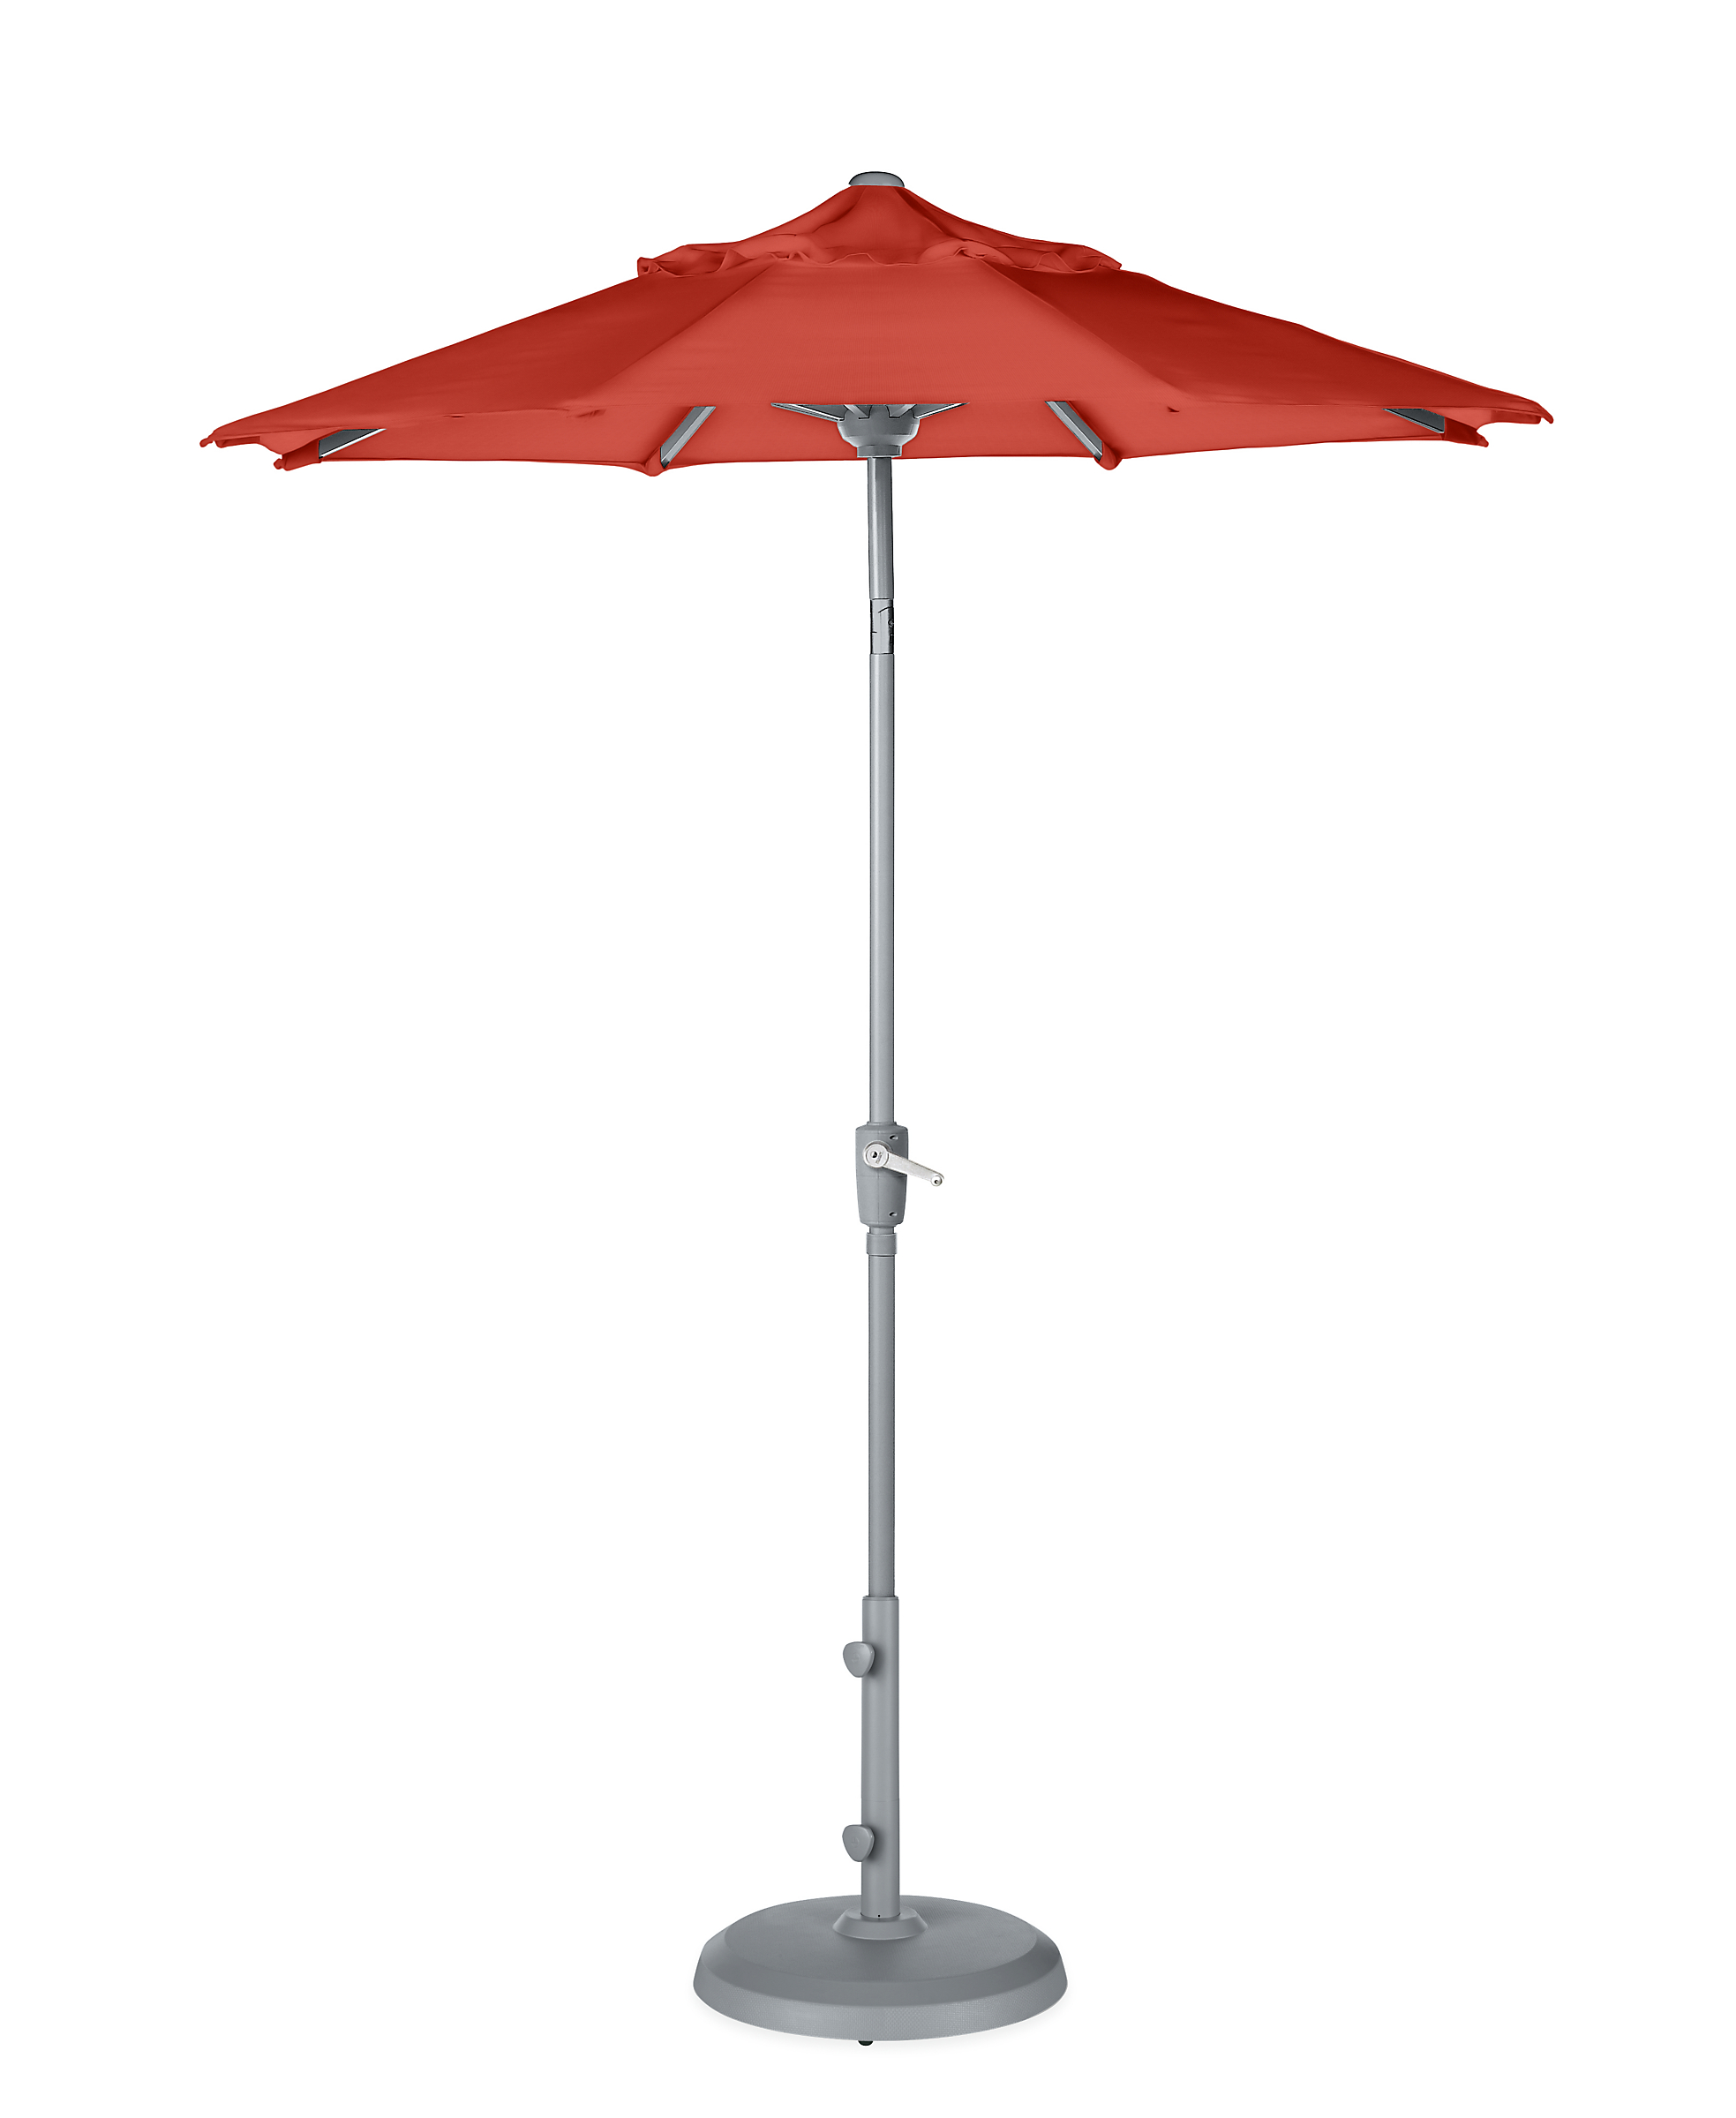 Maui 7.5' Round Patio Umbrella in Sunbrella Canvas Orange with Silver Base